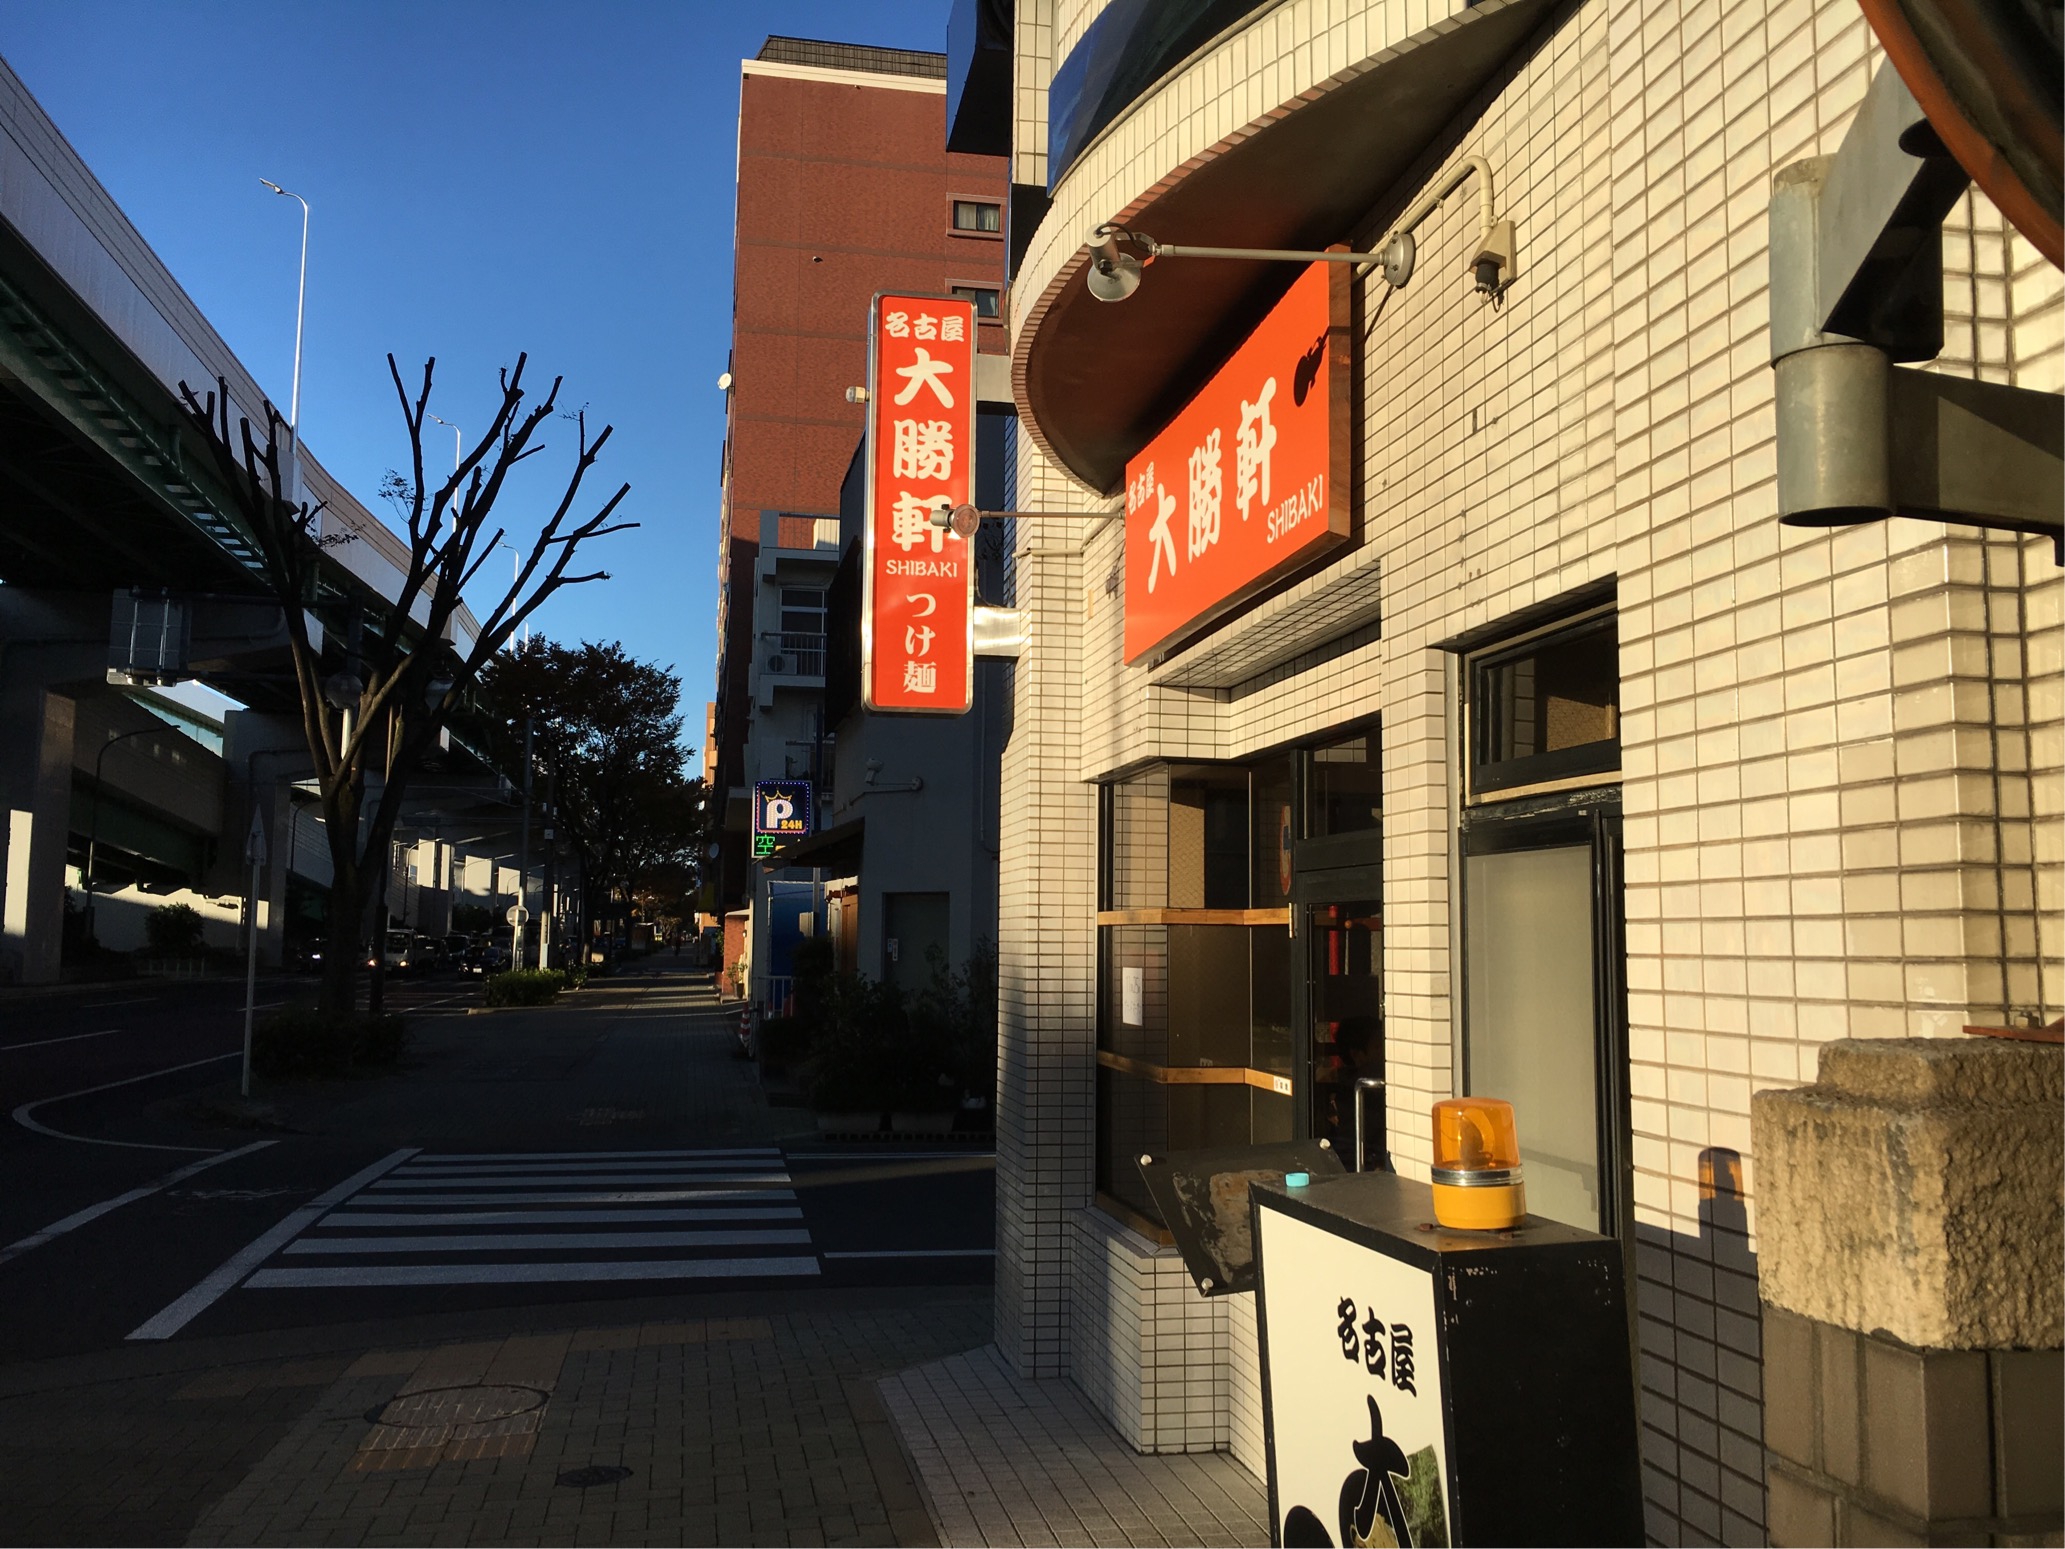 瑞穂区開店 雁道につけ麺 名古屋 大勝軒shibaki が19 11 25 月 にグランドオープンするみたい みずほん